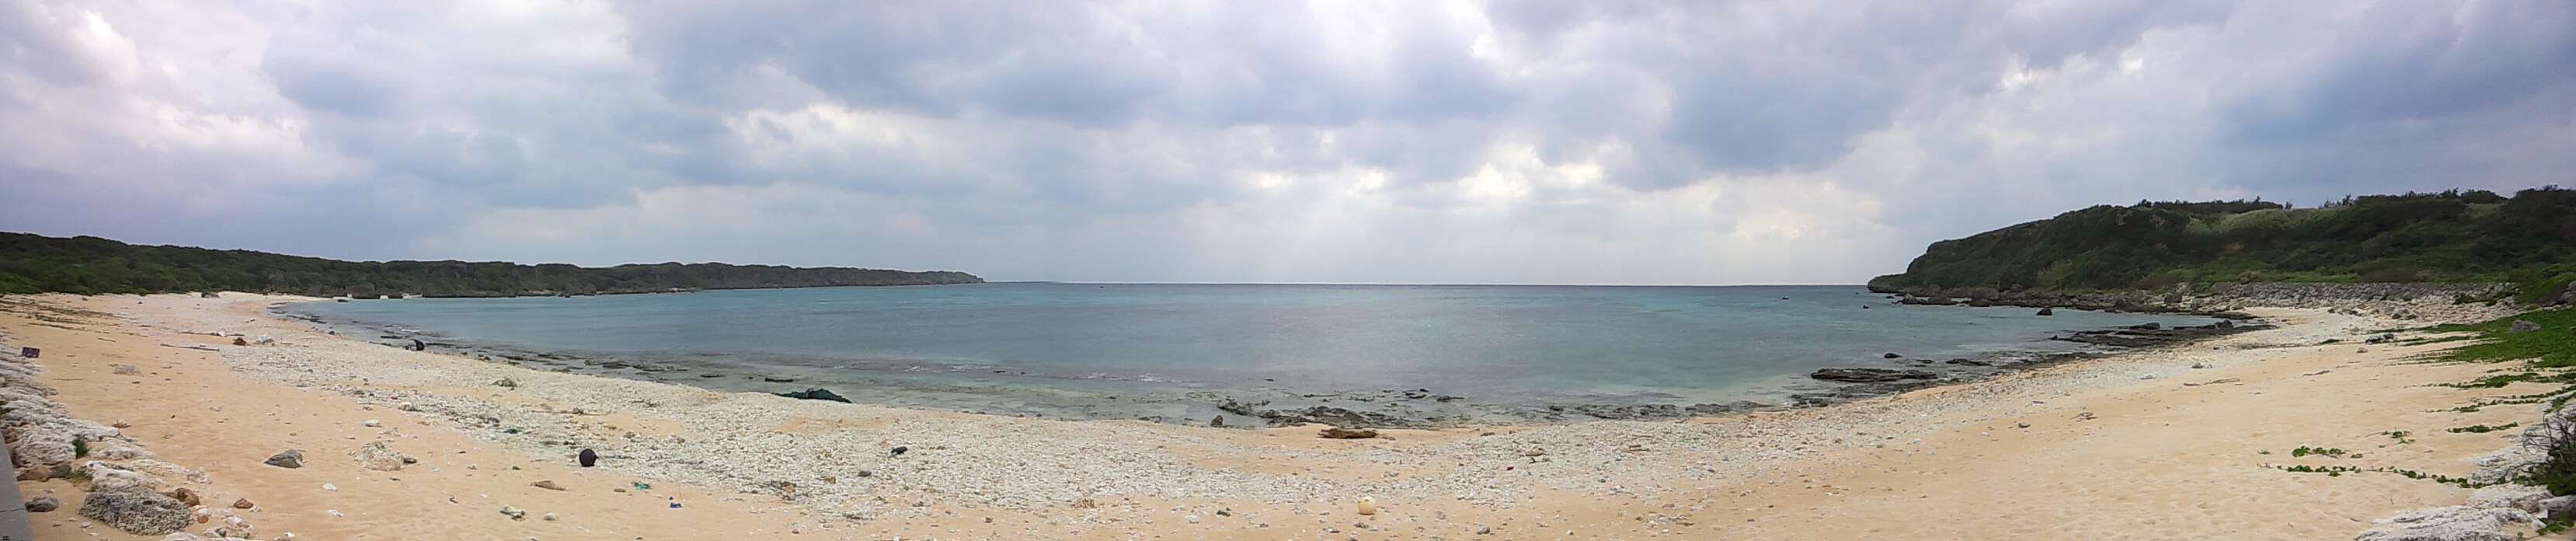 2015_1217_2_東平安名崎の南側のビーチ4